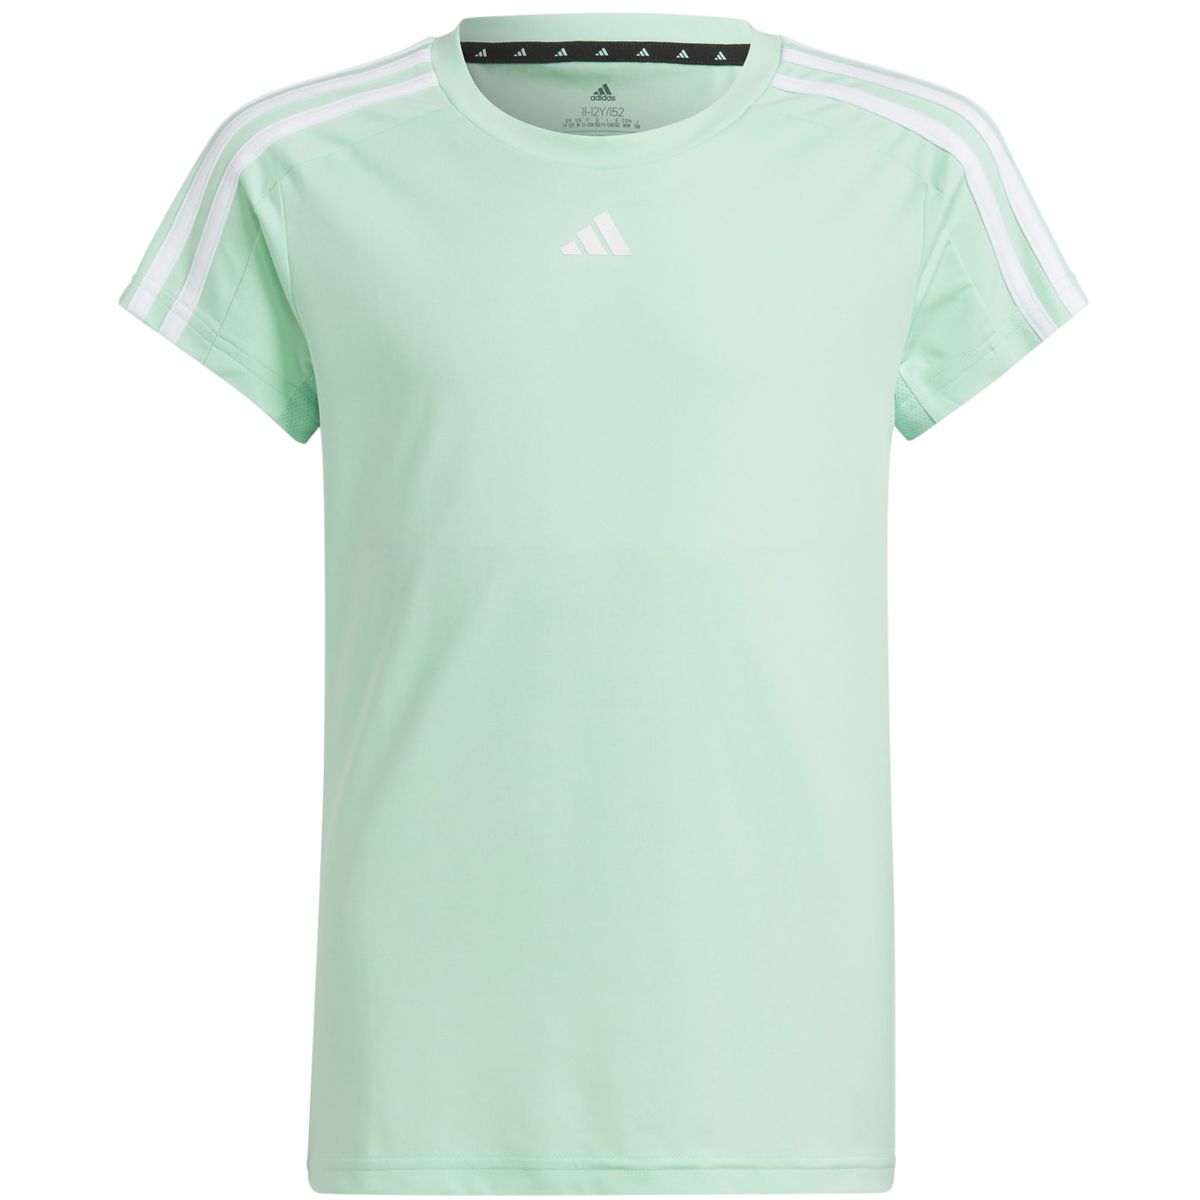 Adidas Train Essentials AEROREADY 3-Streifen Slim-Fit Training T-Shirt Mädchen